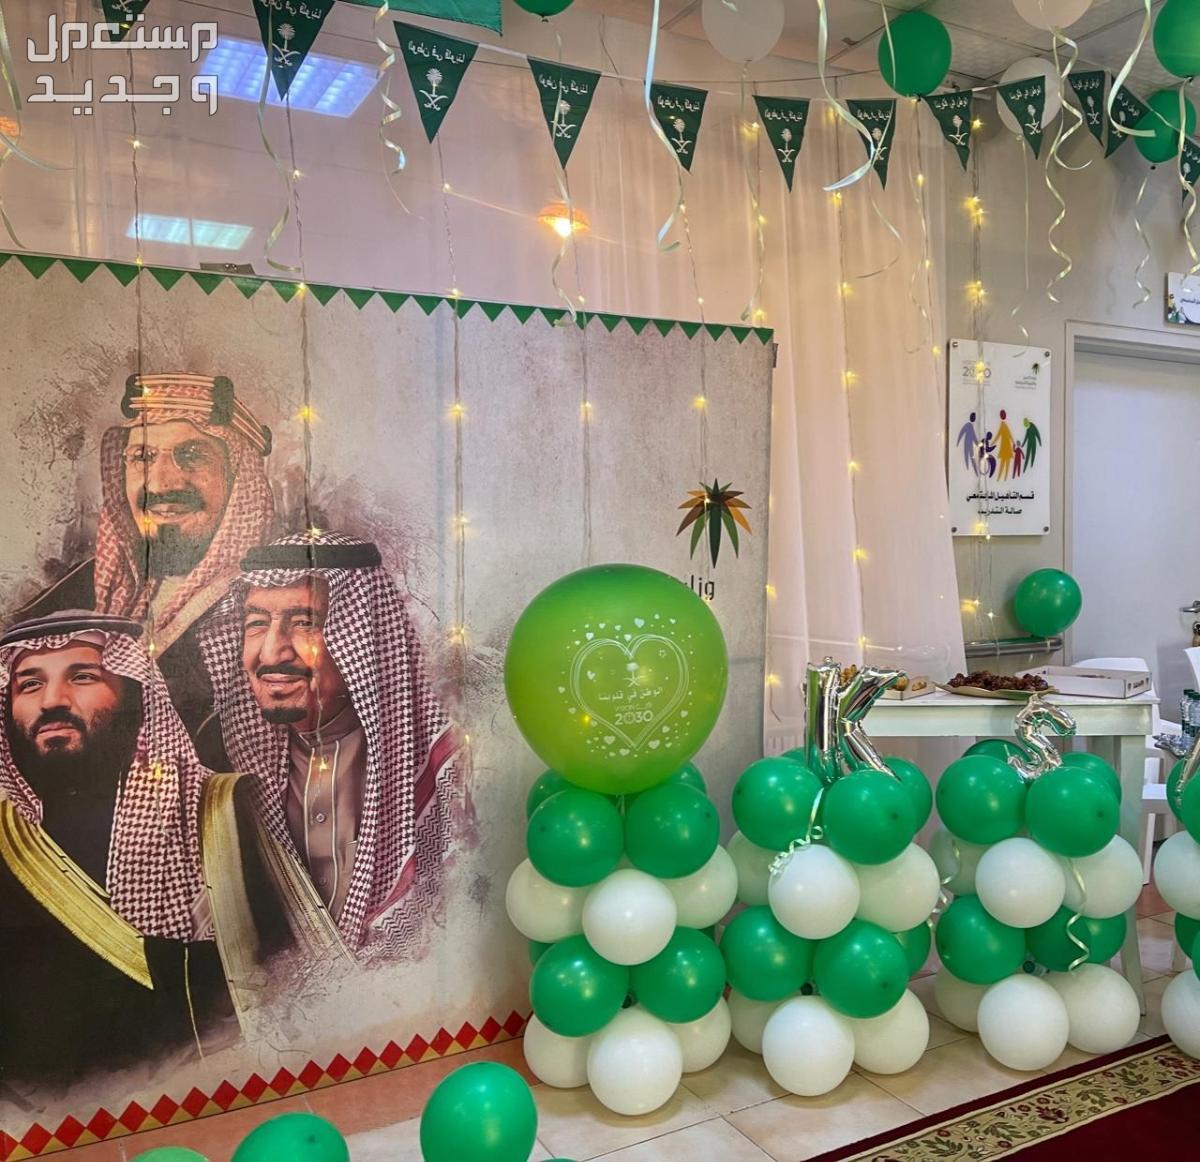 صور ديكورات داخلية بمناسبة اليوم الوطني السعودي 1445 في السعودية ديكورات داخلية بمناسبة اليوم الوطني